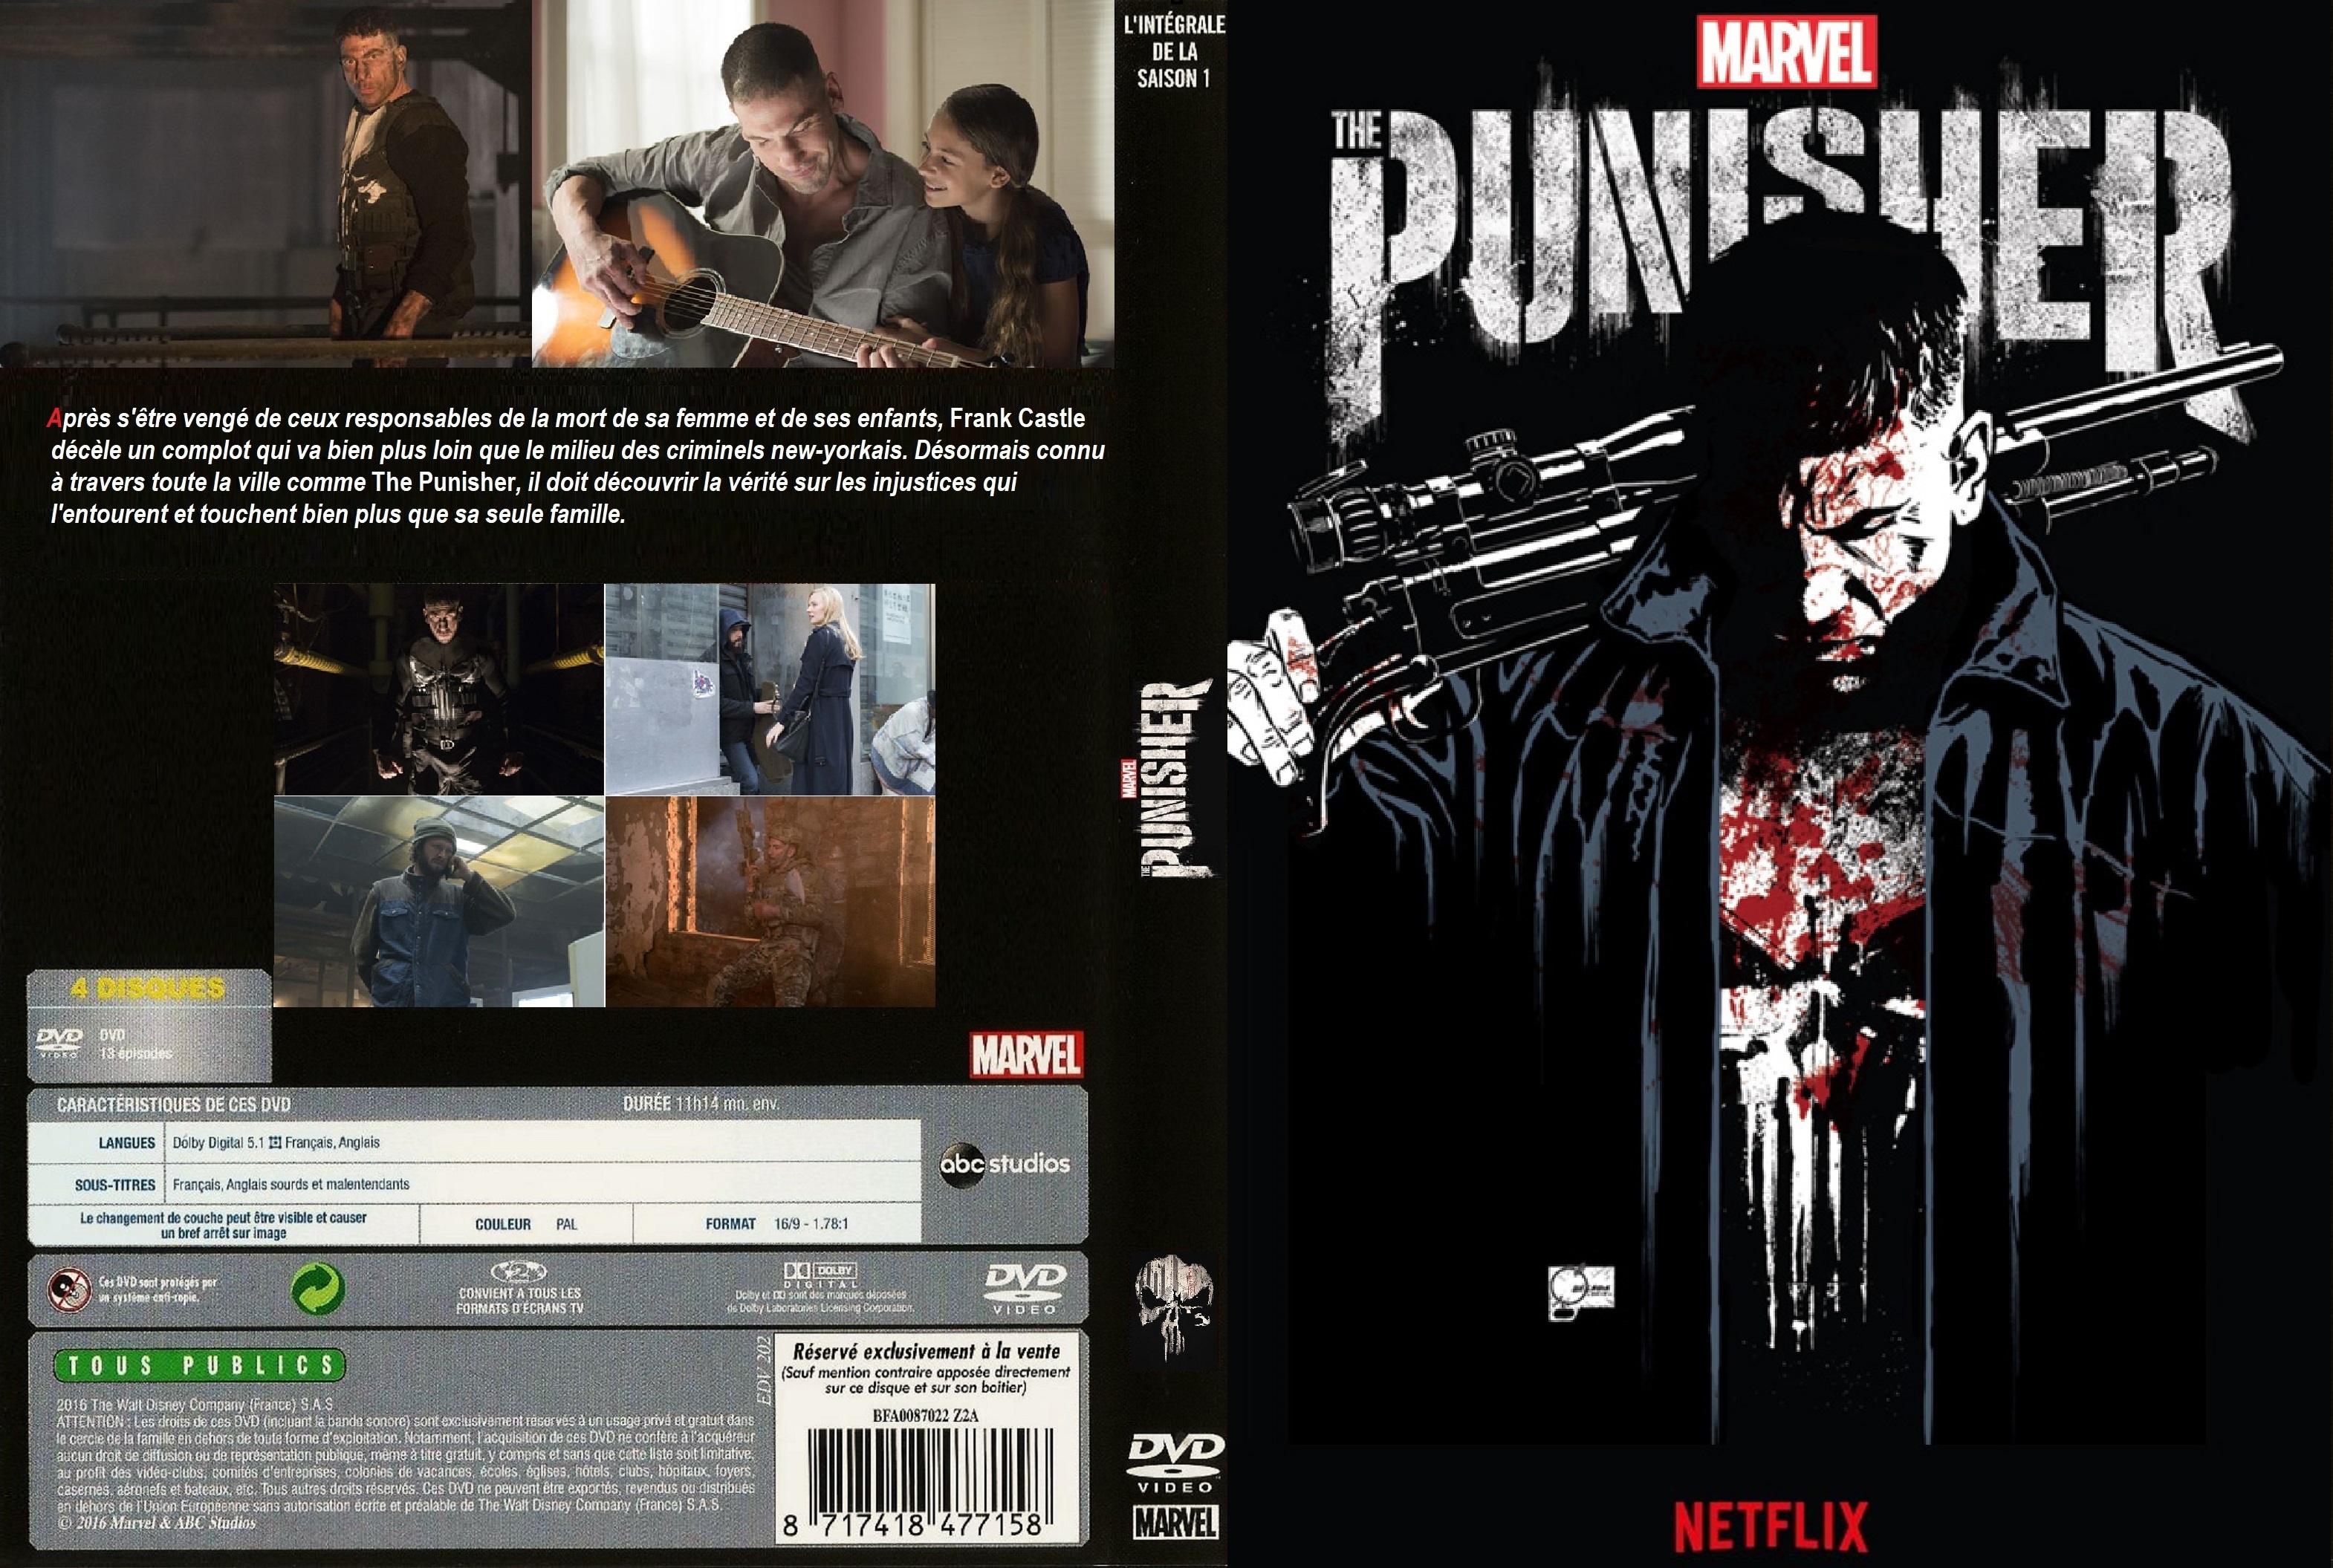 Jaquette DVD The Punisher saison 1 custom v2